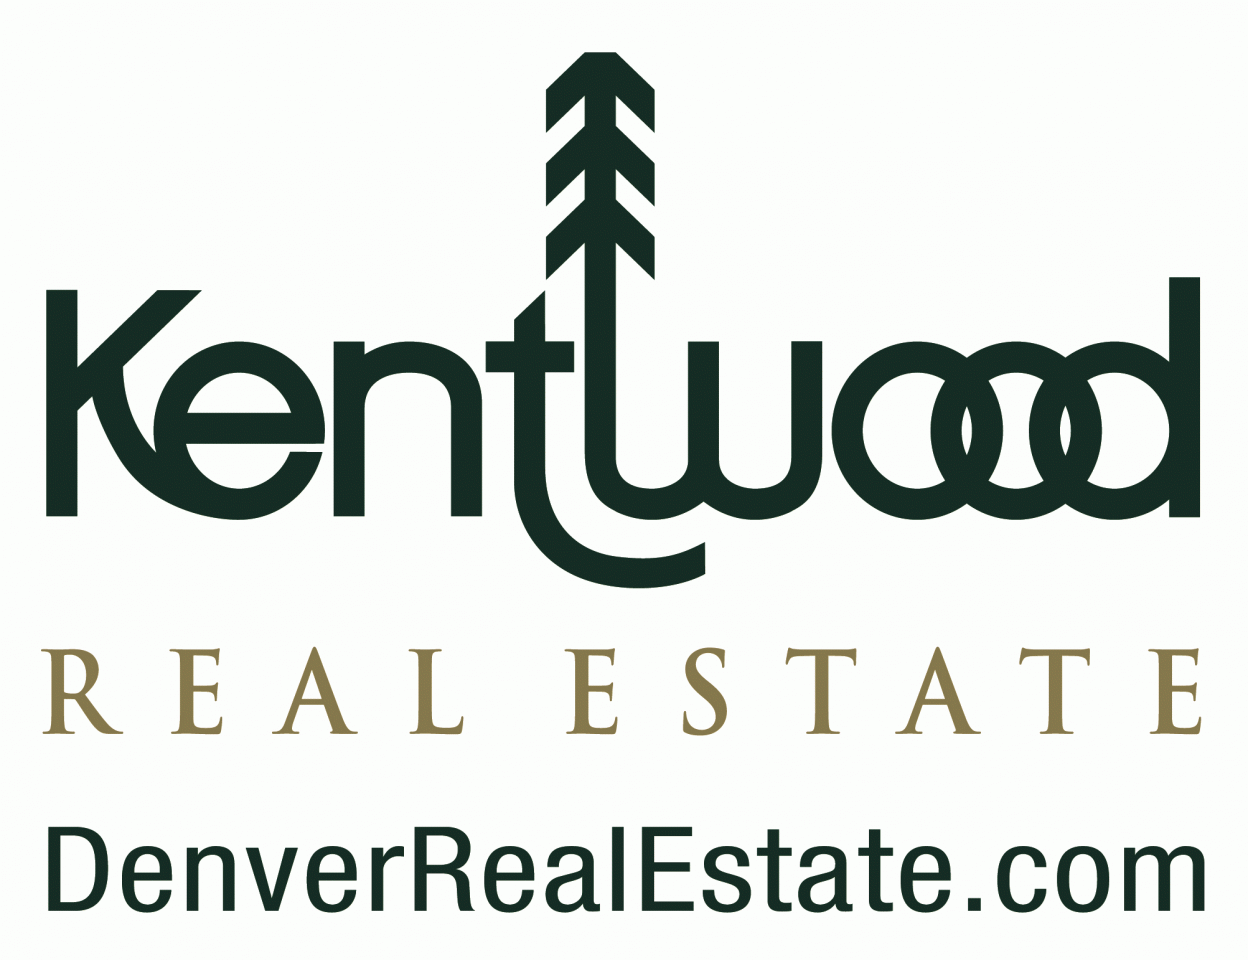 Kentwood Real Estate Logo